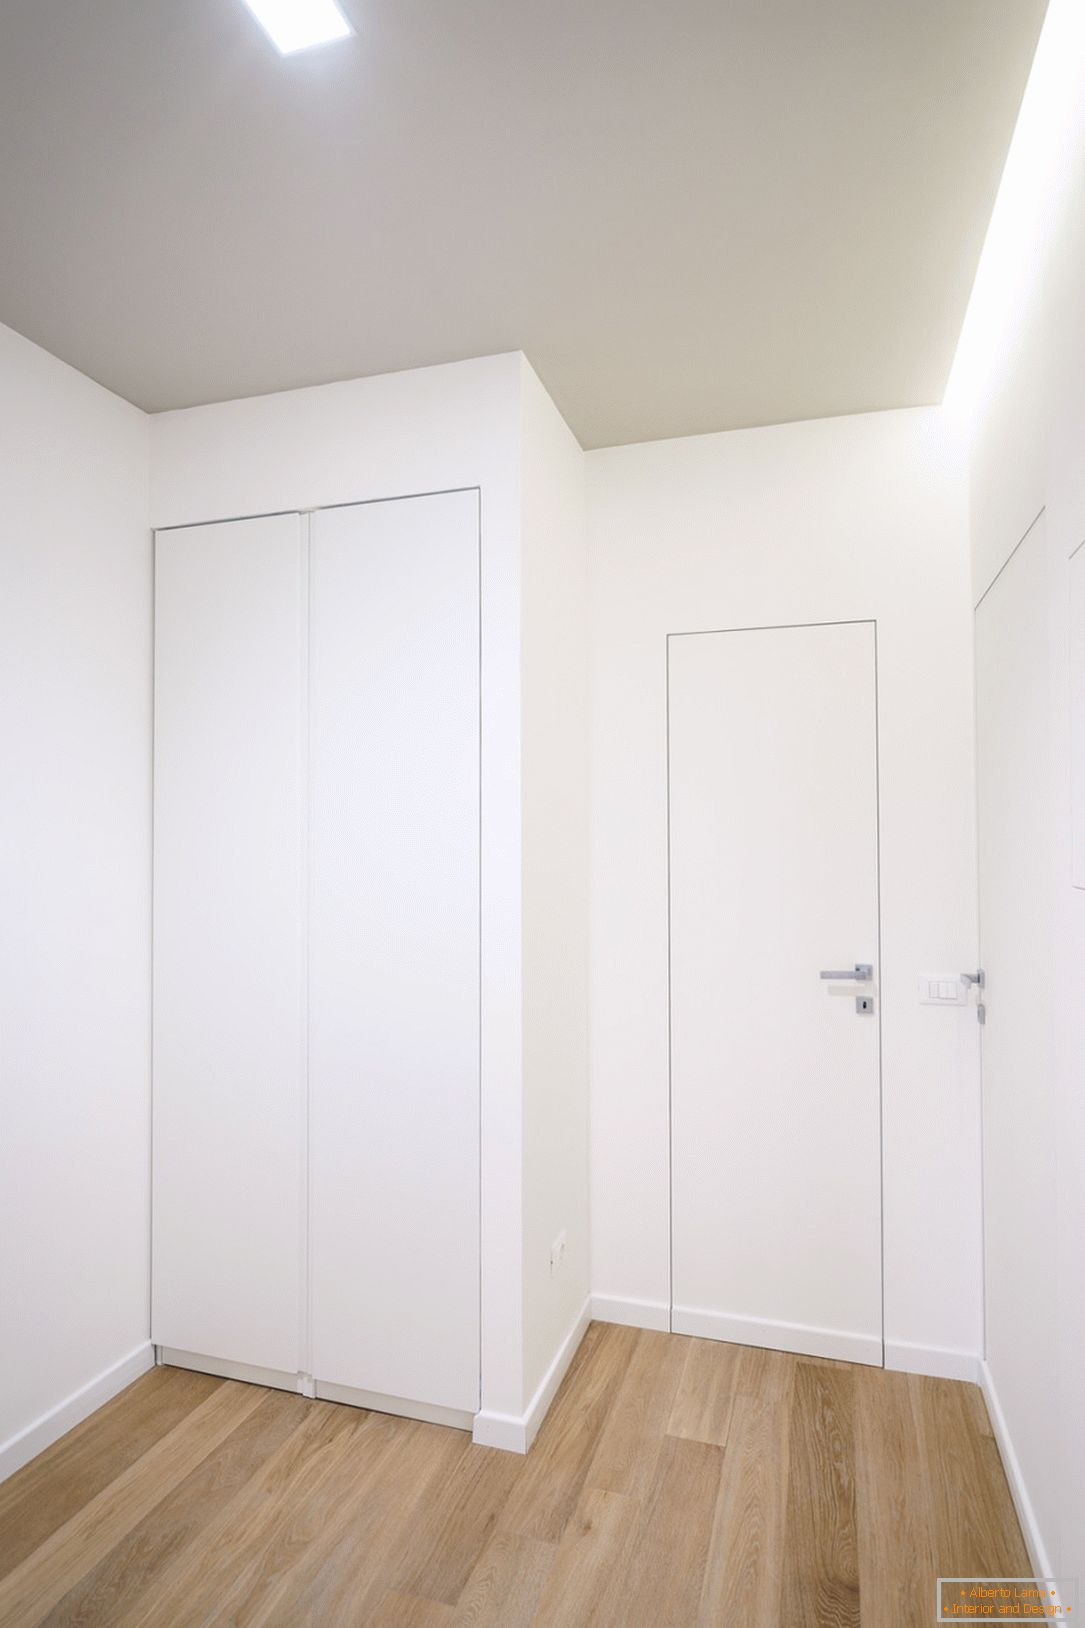 Corridor in white color